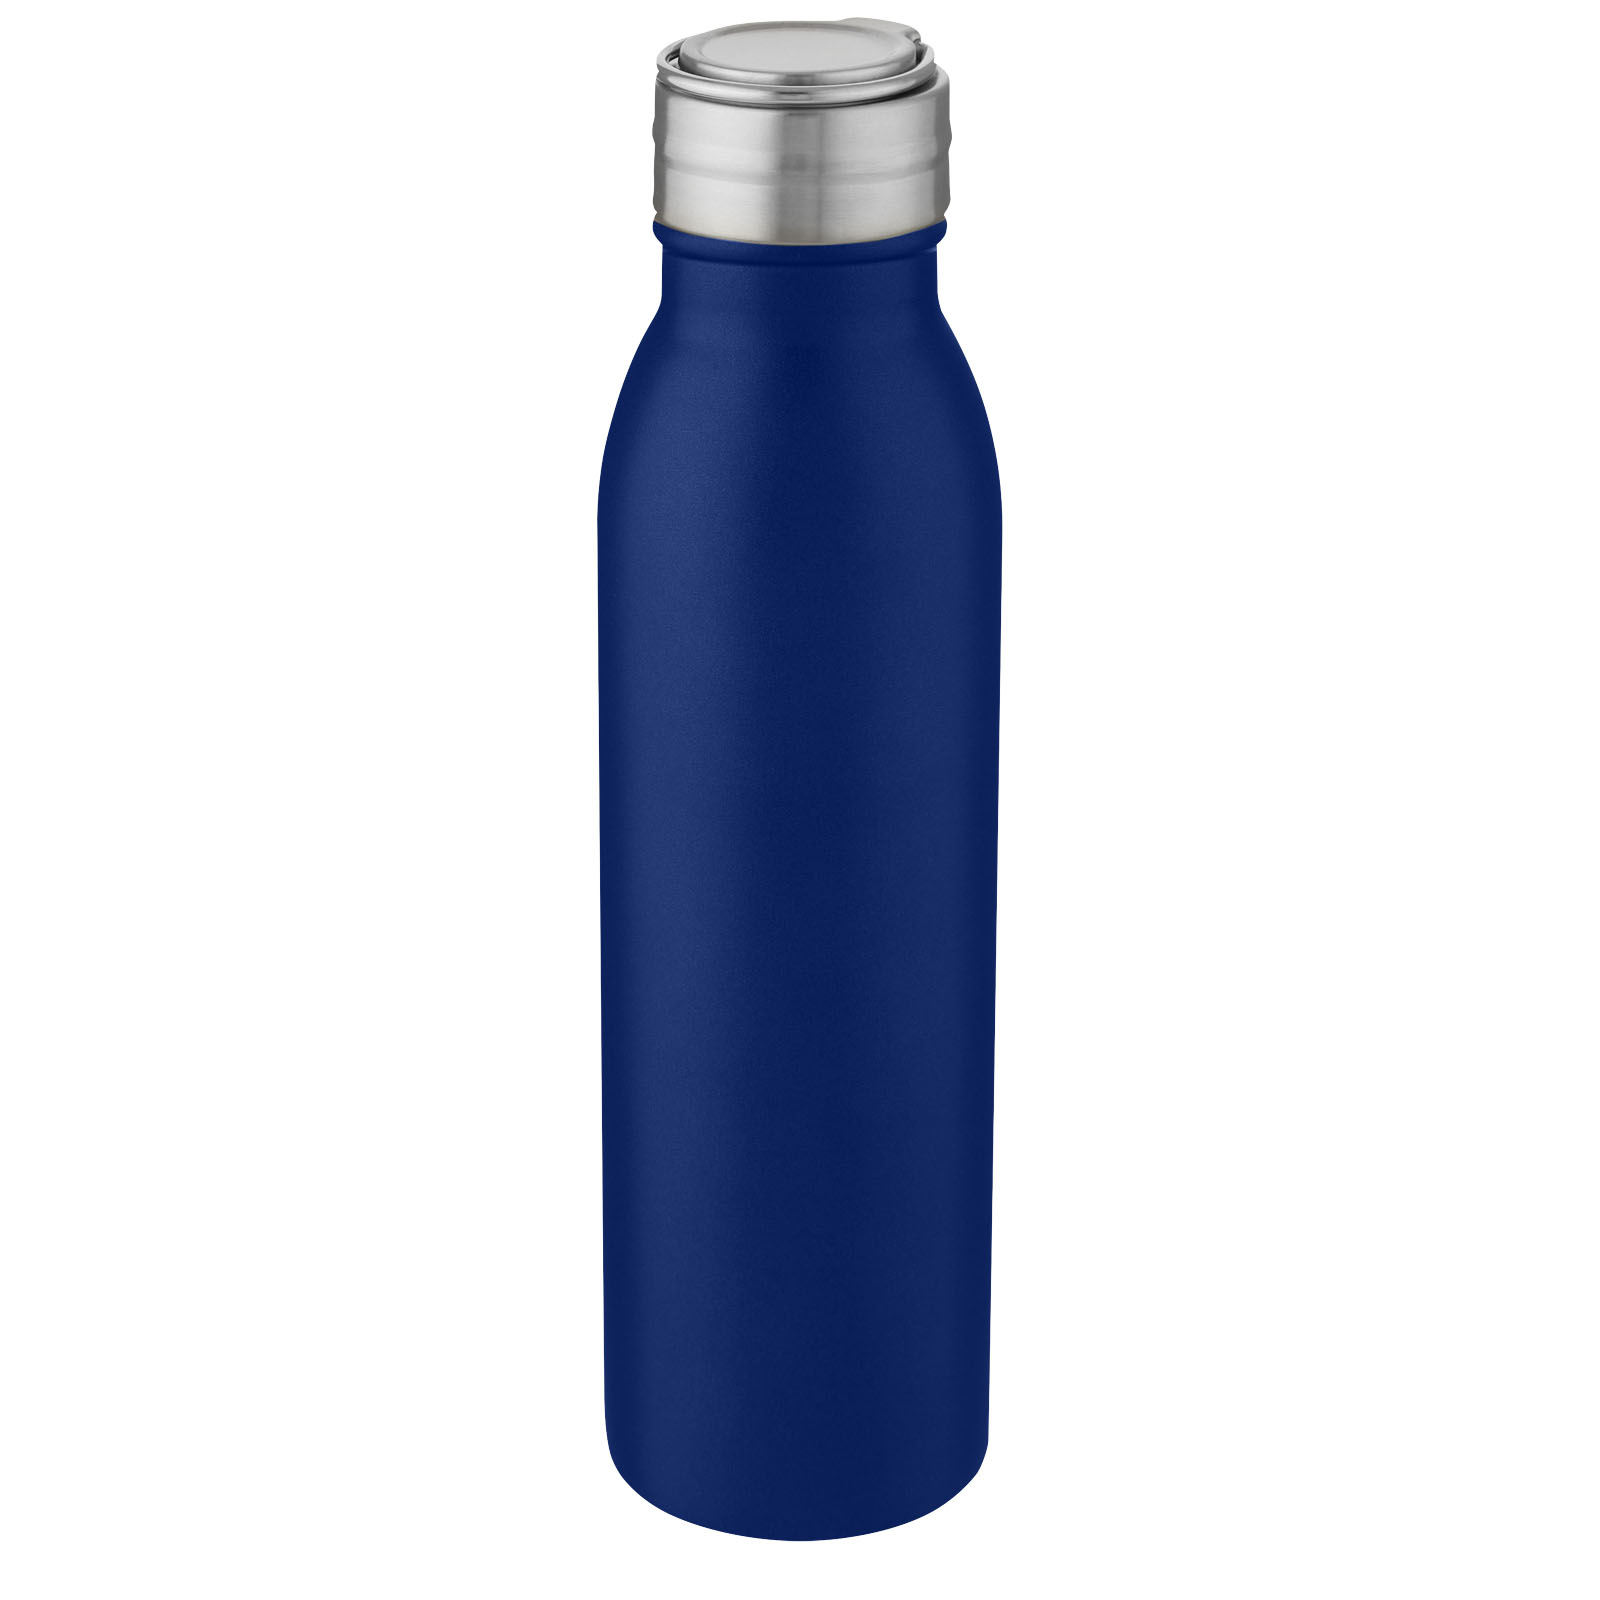 Advertising Water bottles - Harper 700 ml stainless steel water bottle with metal loop